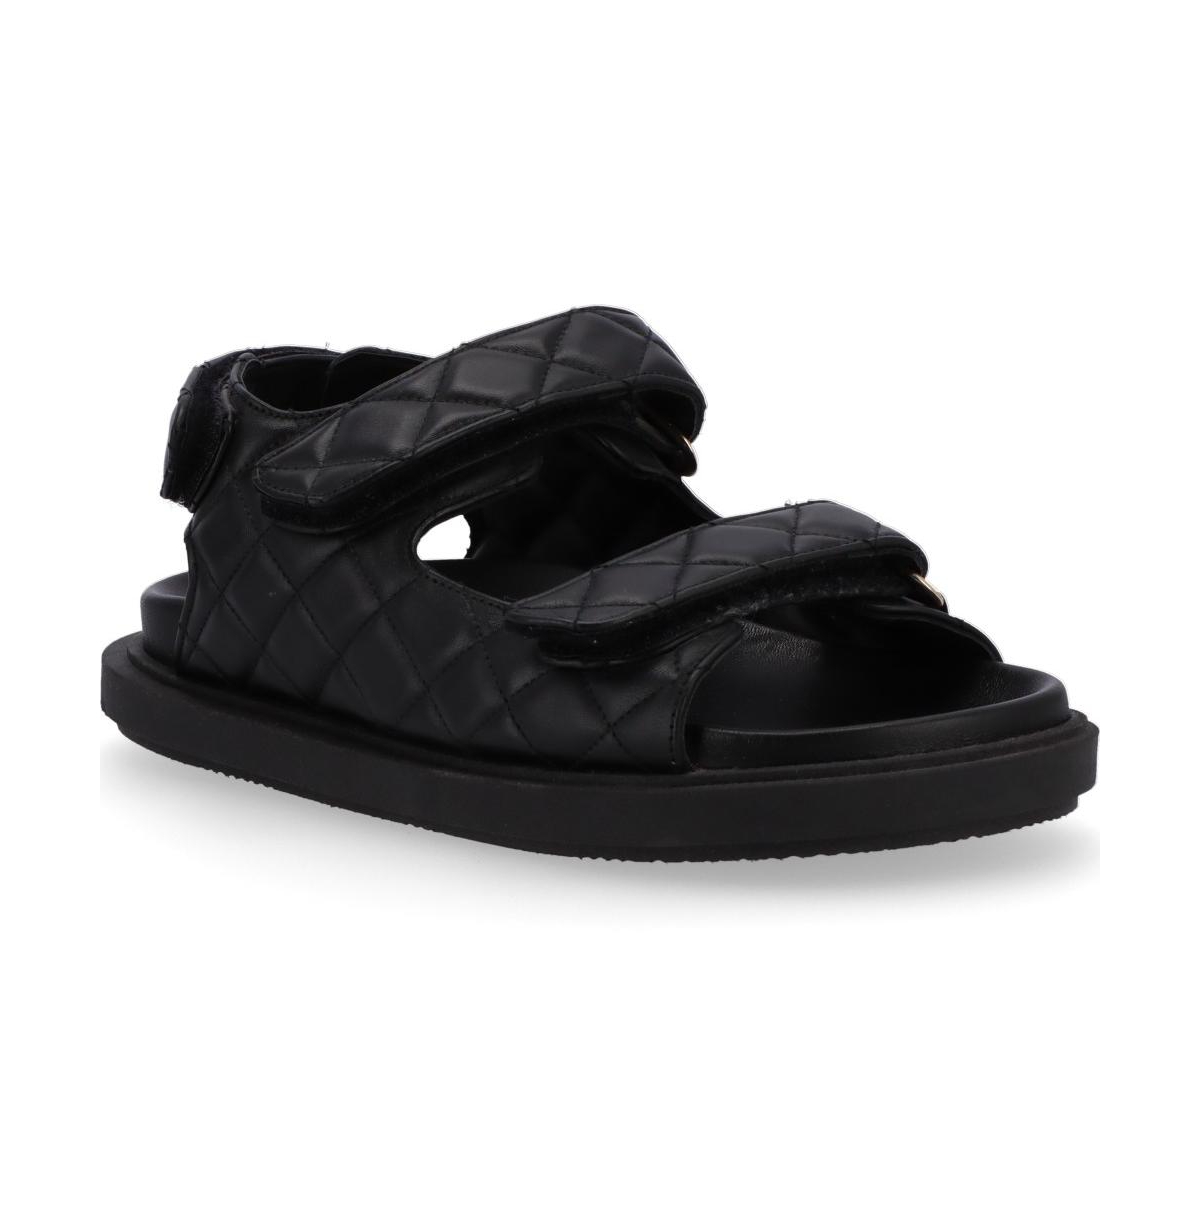 Women's Hook-Loop Leather Sandals - Black